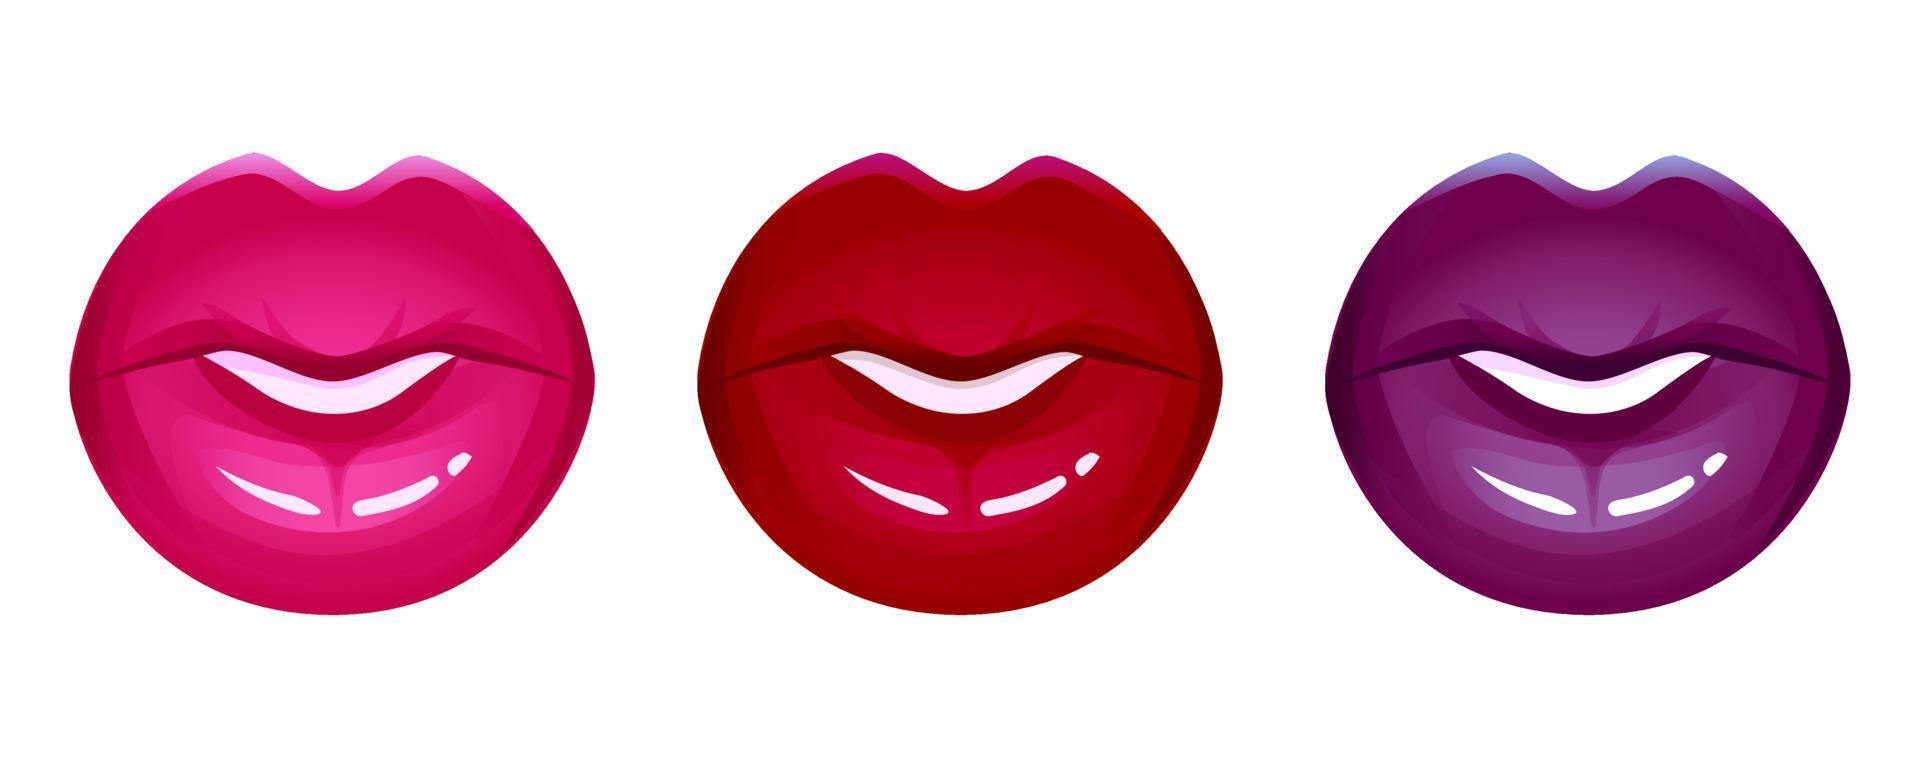 labbra realistiche insieme dell'icona di vettore isolato su bianco. bocca 3d delle donne, rossetto lucido lucido rosso. illustrazione di moda glamour.